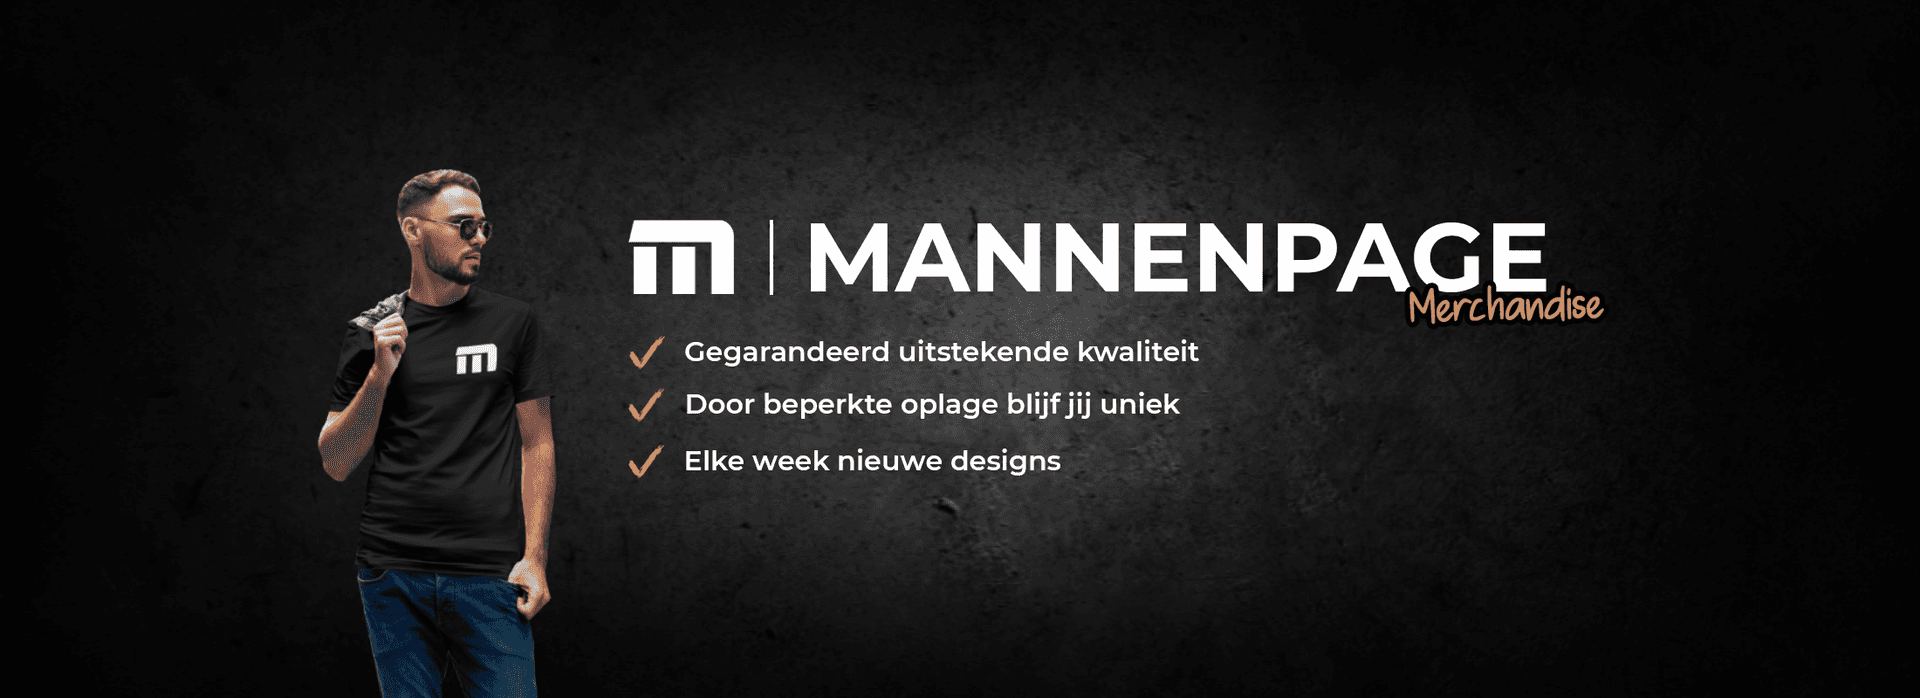 Banner for Mannenpage Merch